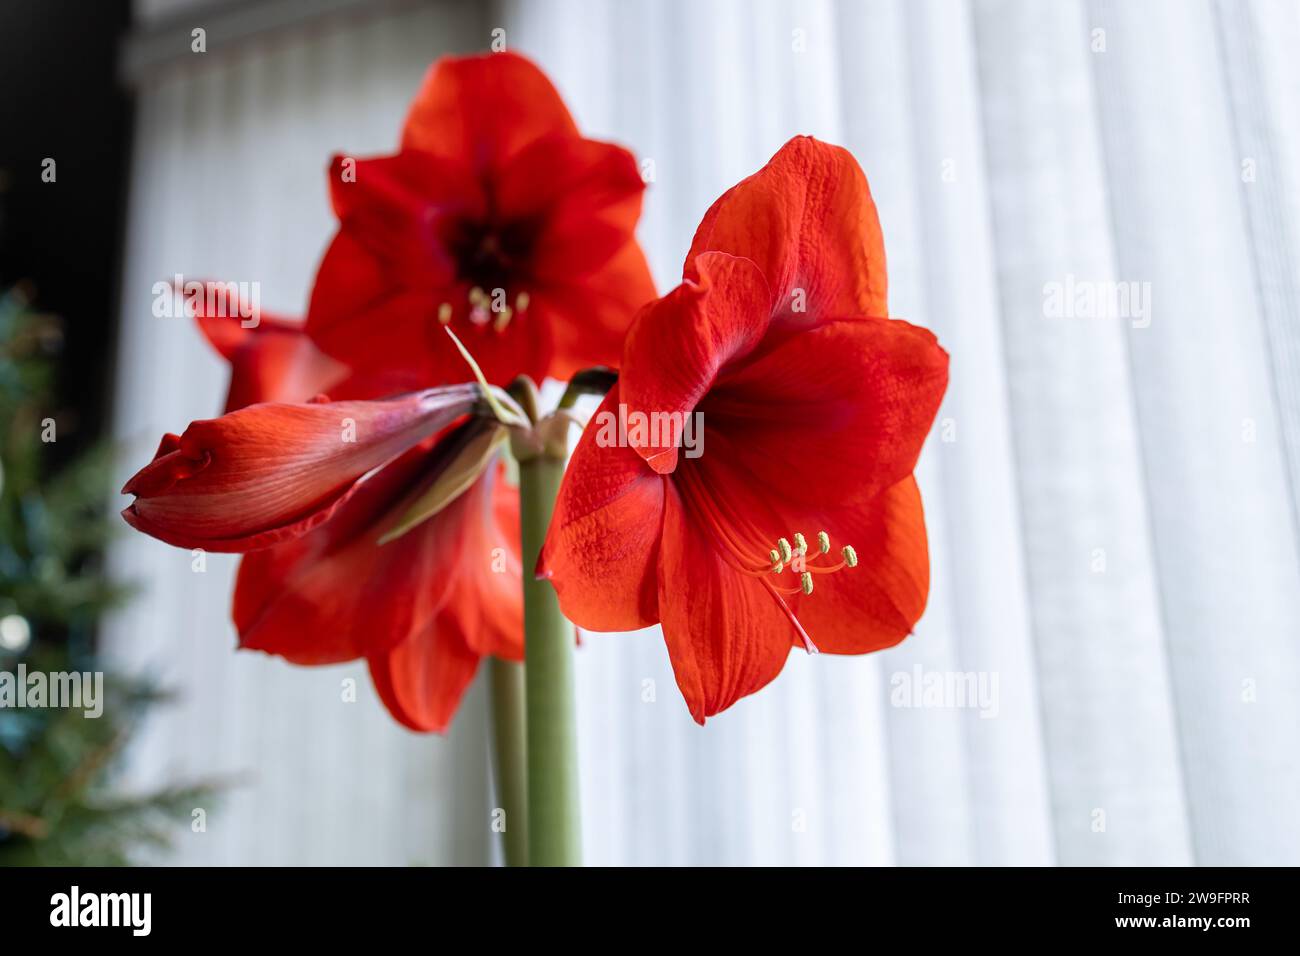 Vue abstraite d'une fleur de plante amaryllis rouge en fleur avec fond de stores verticaux blancs défocalisés Banque D'Images